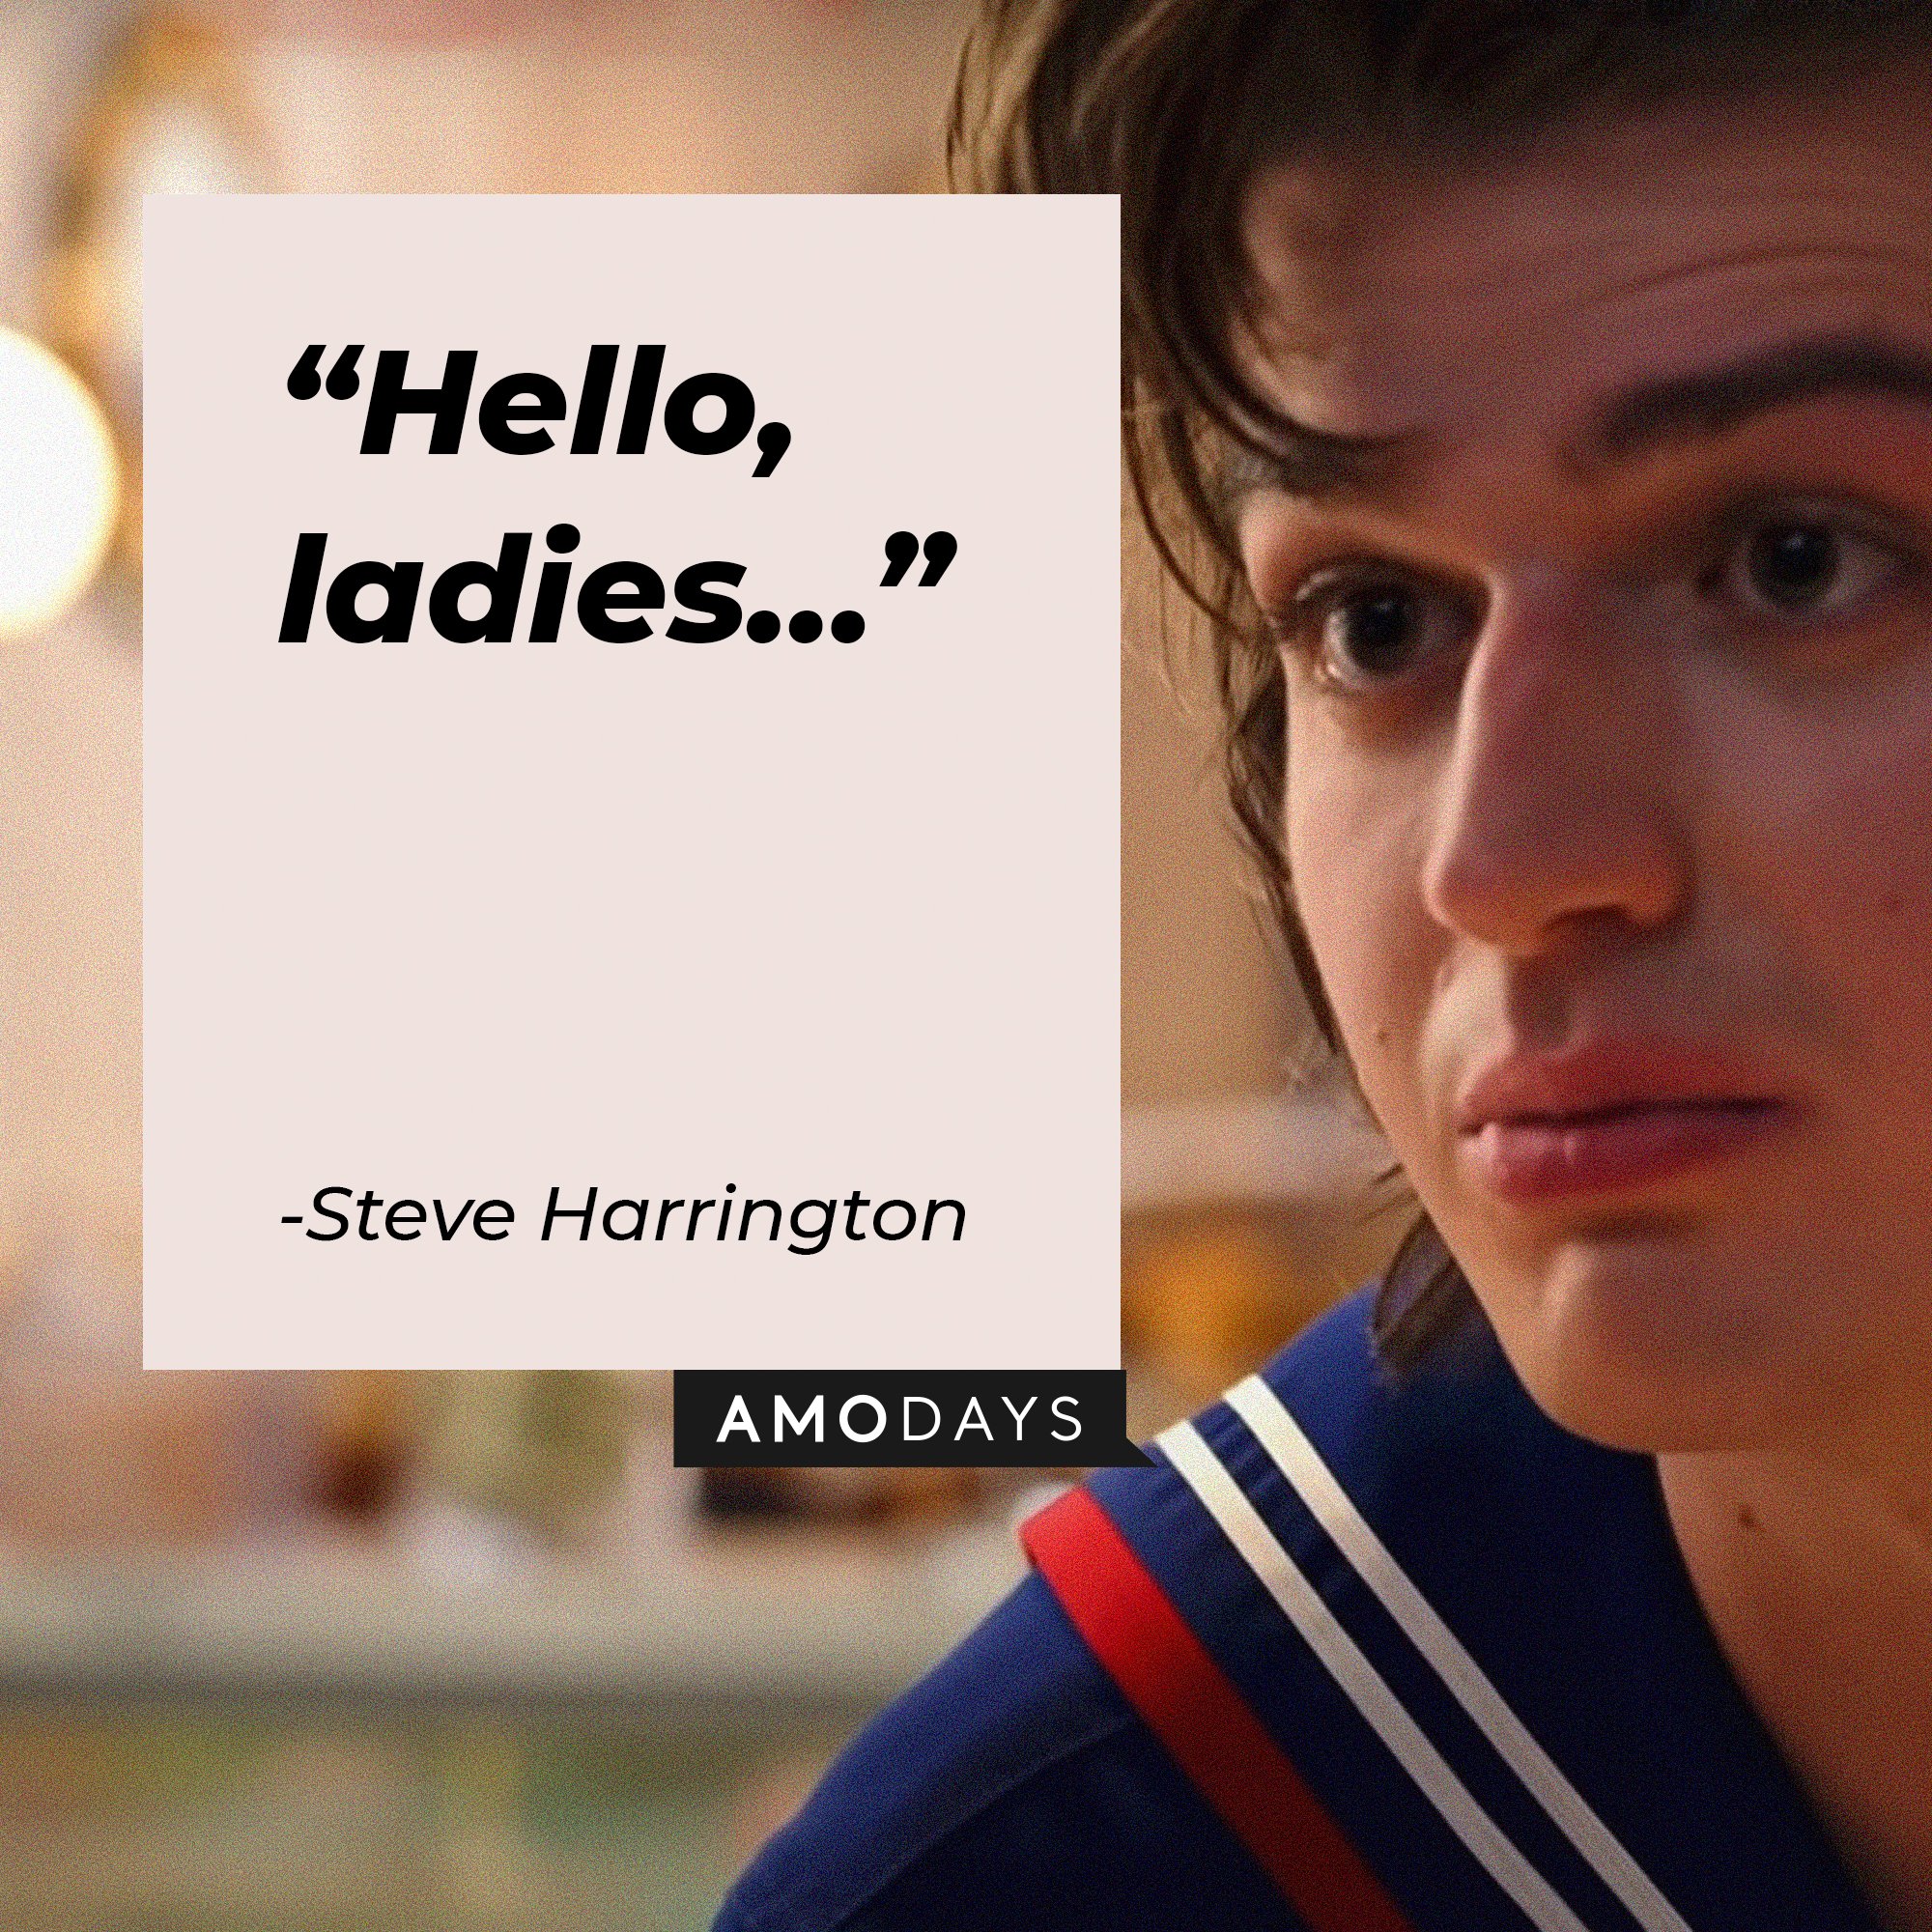  Steve Harrington's quote: "Hello, ladies…"  | Image: AmoDays  